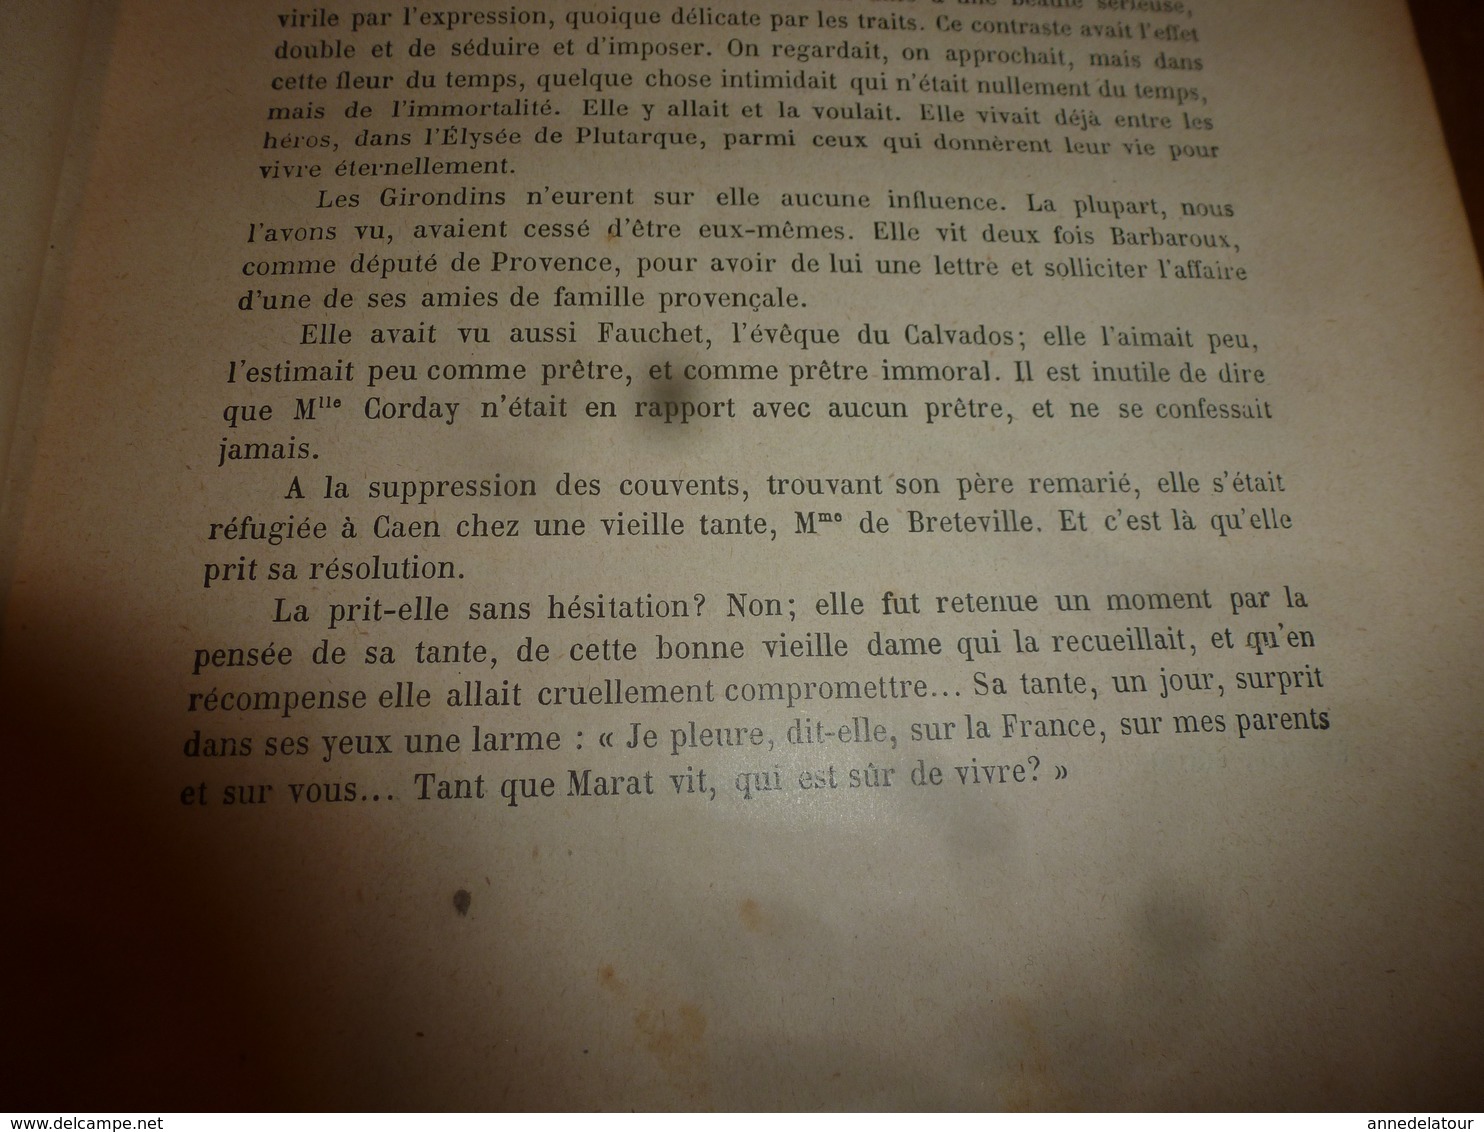 18??  Charlotte Corday acheta un couteau frais émoulu, Marat,etc (Histoire de la Révolution française)